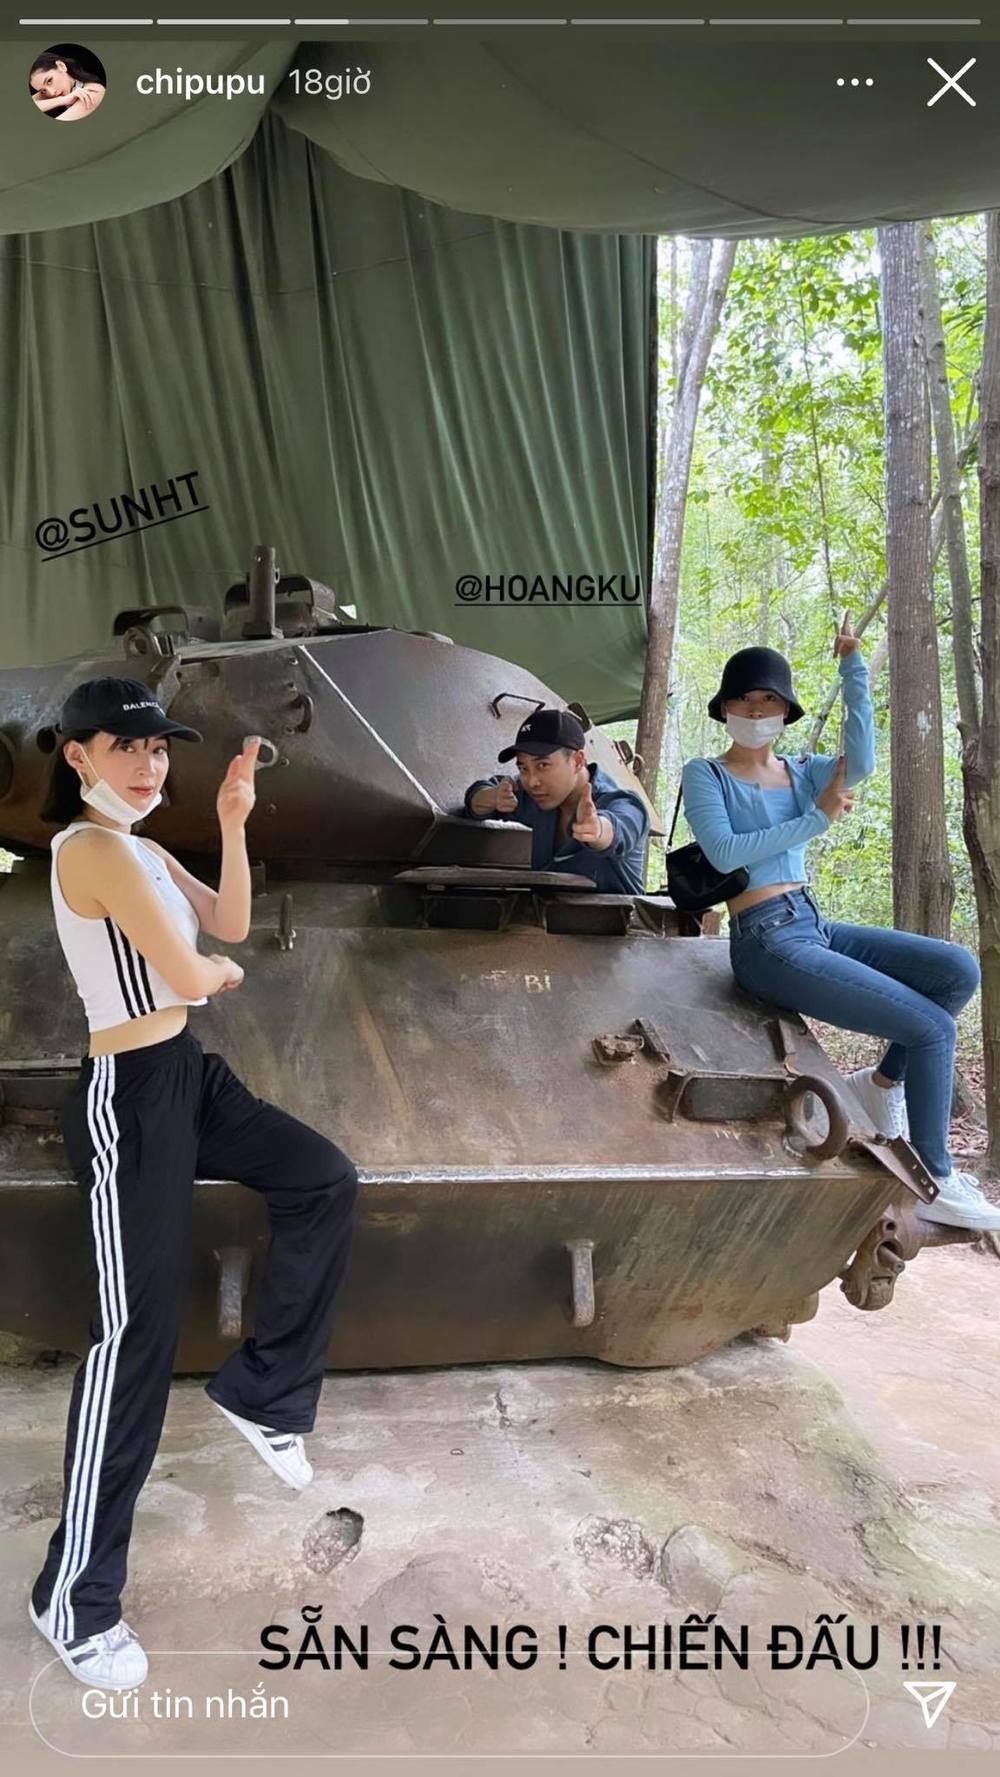  
Chi Pu bị khán giả "ném đá" vì hình ảnh ngồi lên xe tăng. (Ảnh: Chụp màn hình)